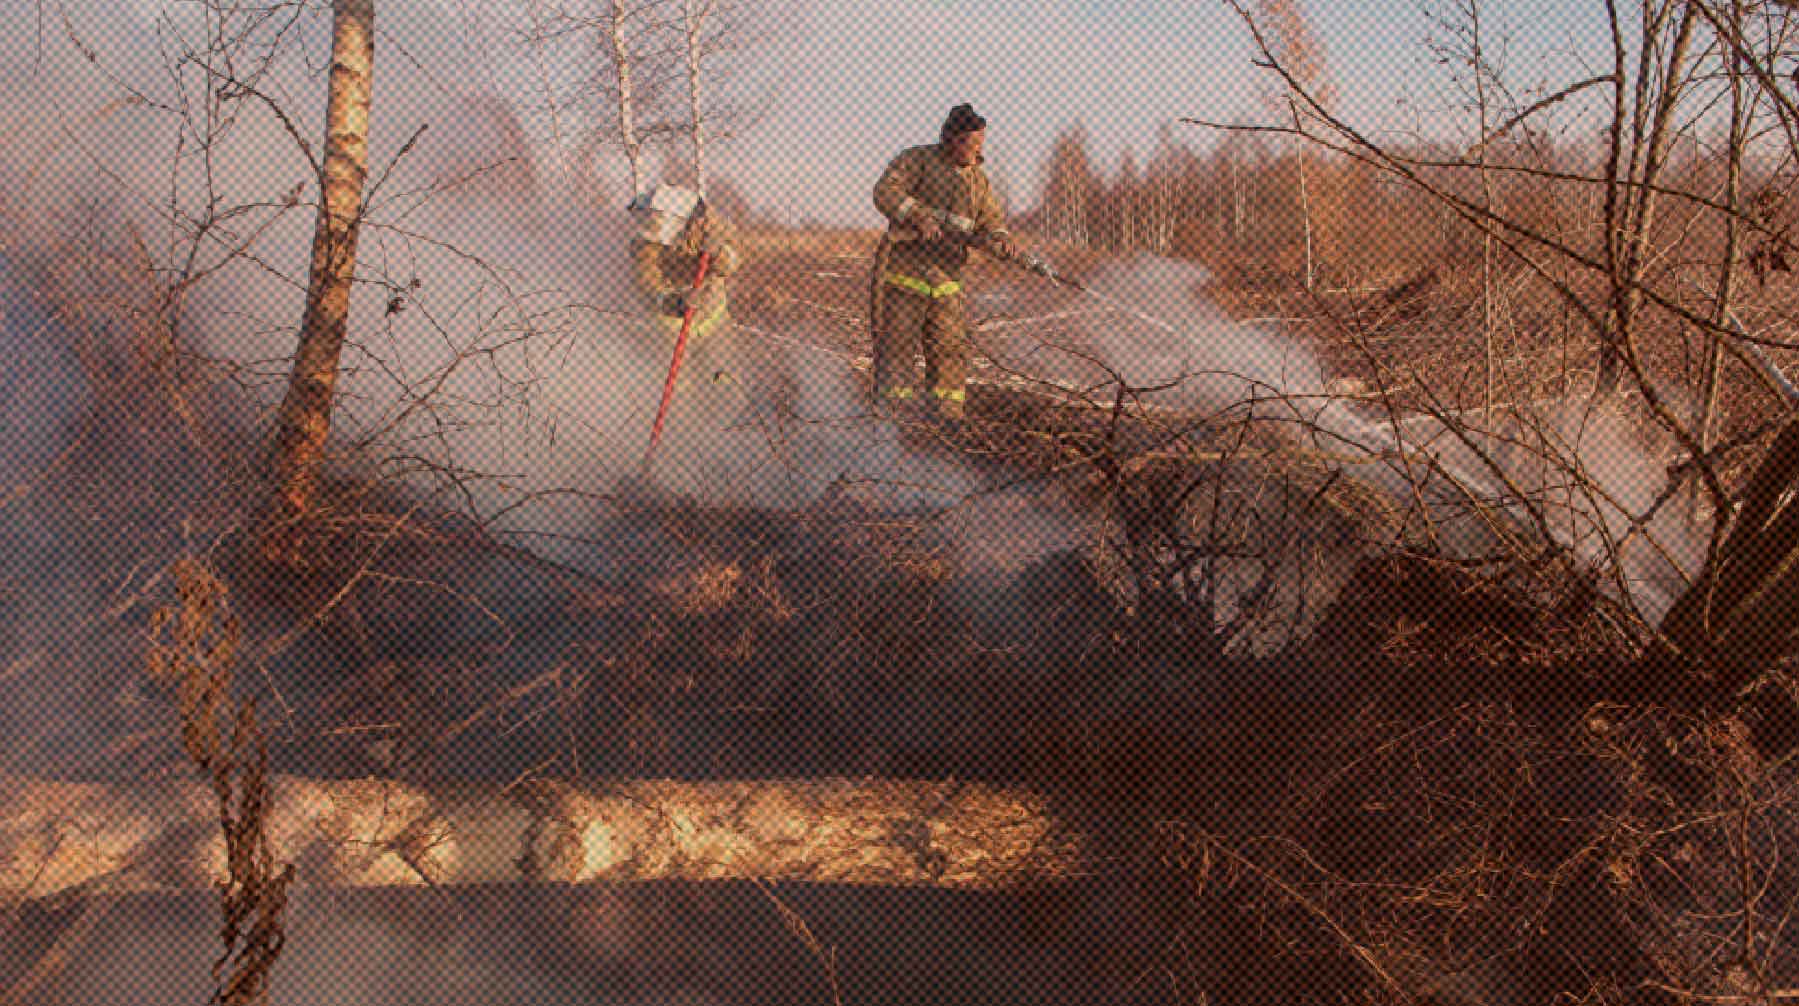 Сейчас в Московской области действуют 12 очагов возгораний, сообщили в МЧС Фото: РИА Новости / Игорь Подгорный